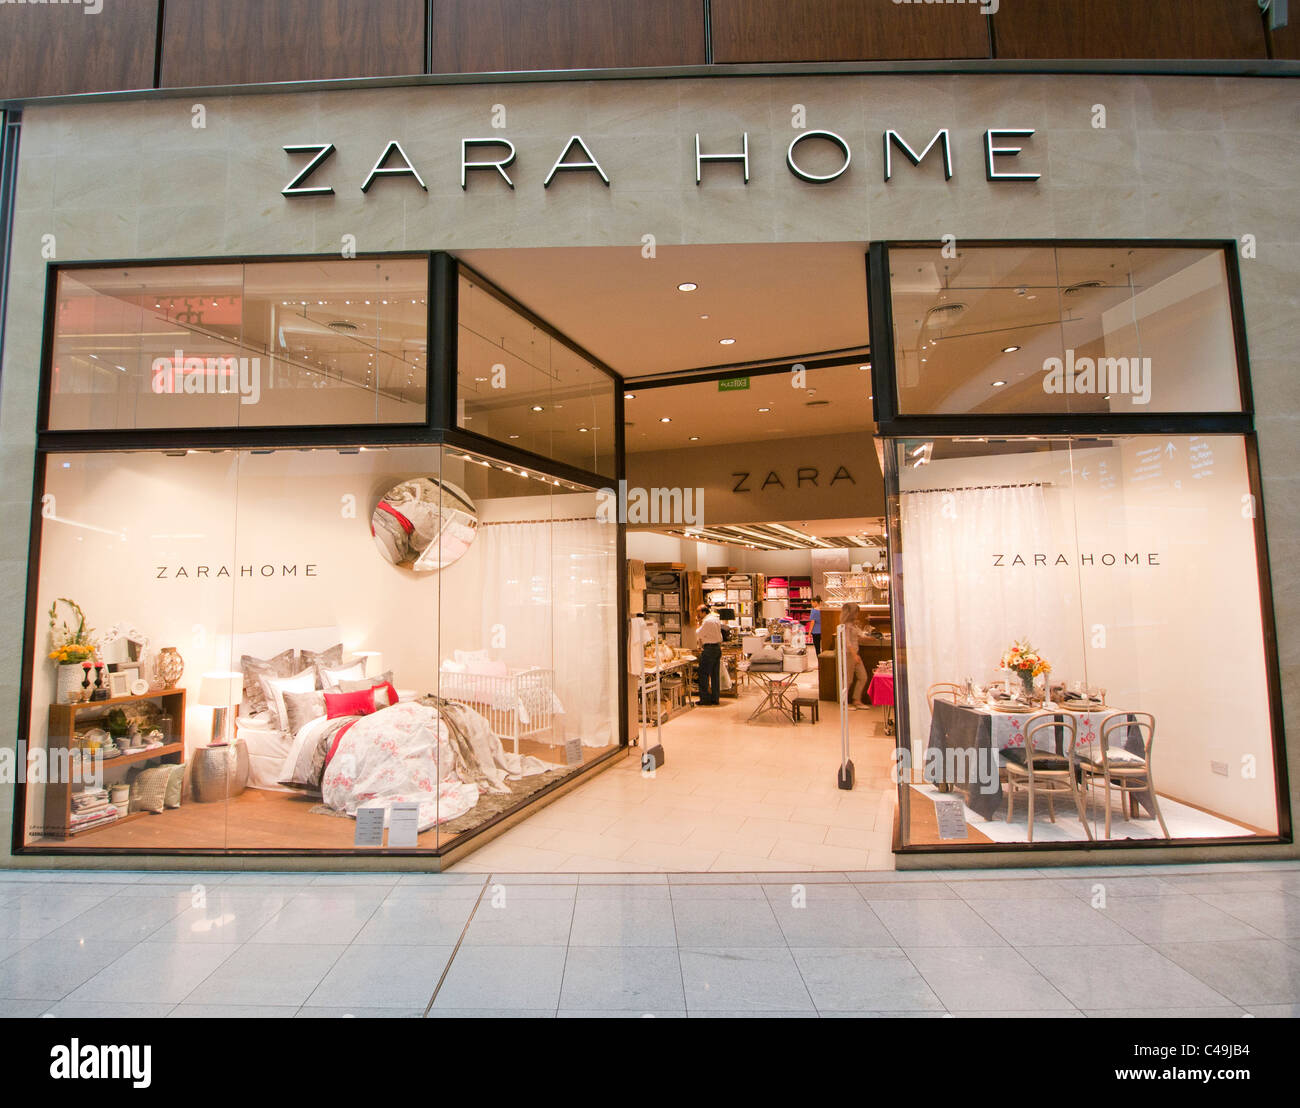 Zara Home Stock Photo - Alamy